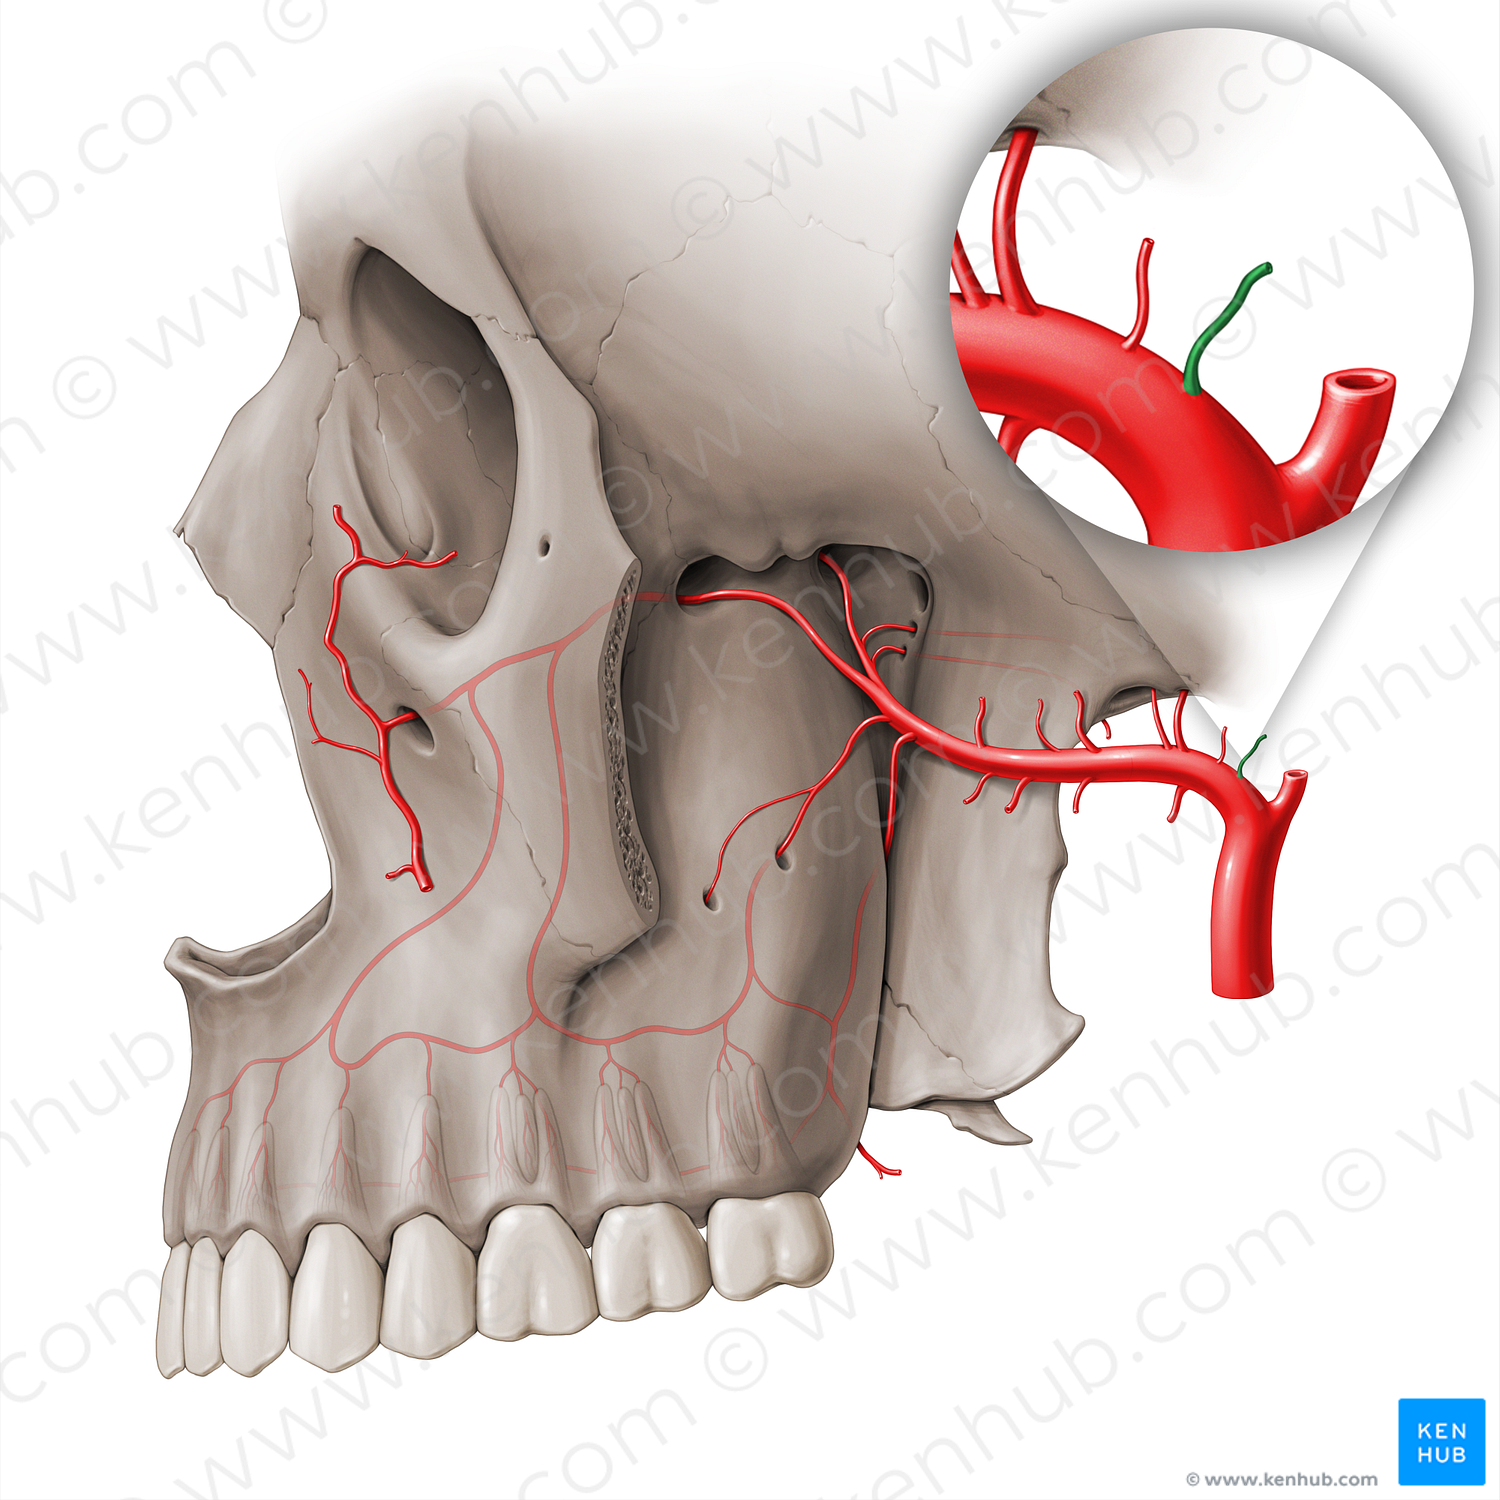 Deep auricular artery (#18506)